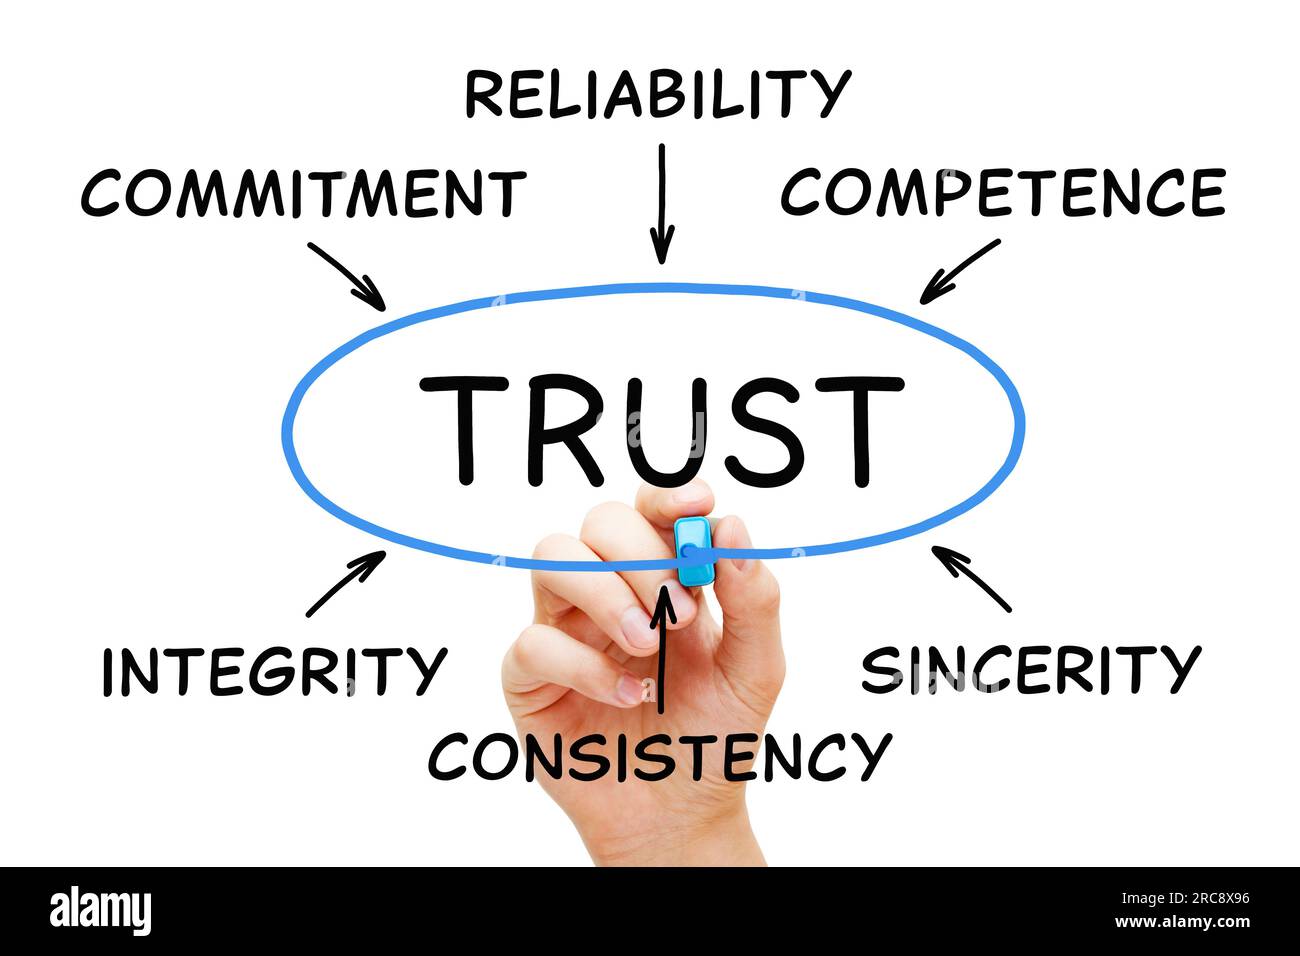 Handschriftliches Diagrammkonzept über Vertrauen in das Geschäft mit verwandten Begriffen Zuverlässigkeit, Integrität, Kompetenz, Aufrichtigkeit, Engagement und Konsistenz. Stockfoto